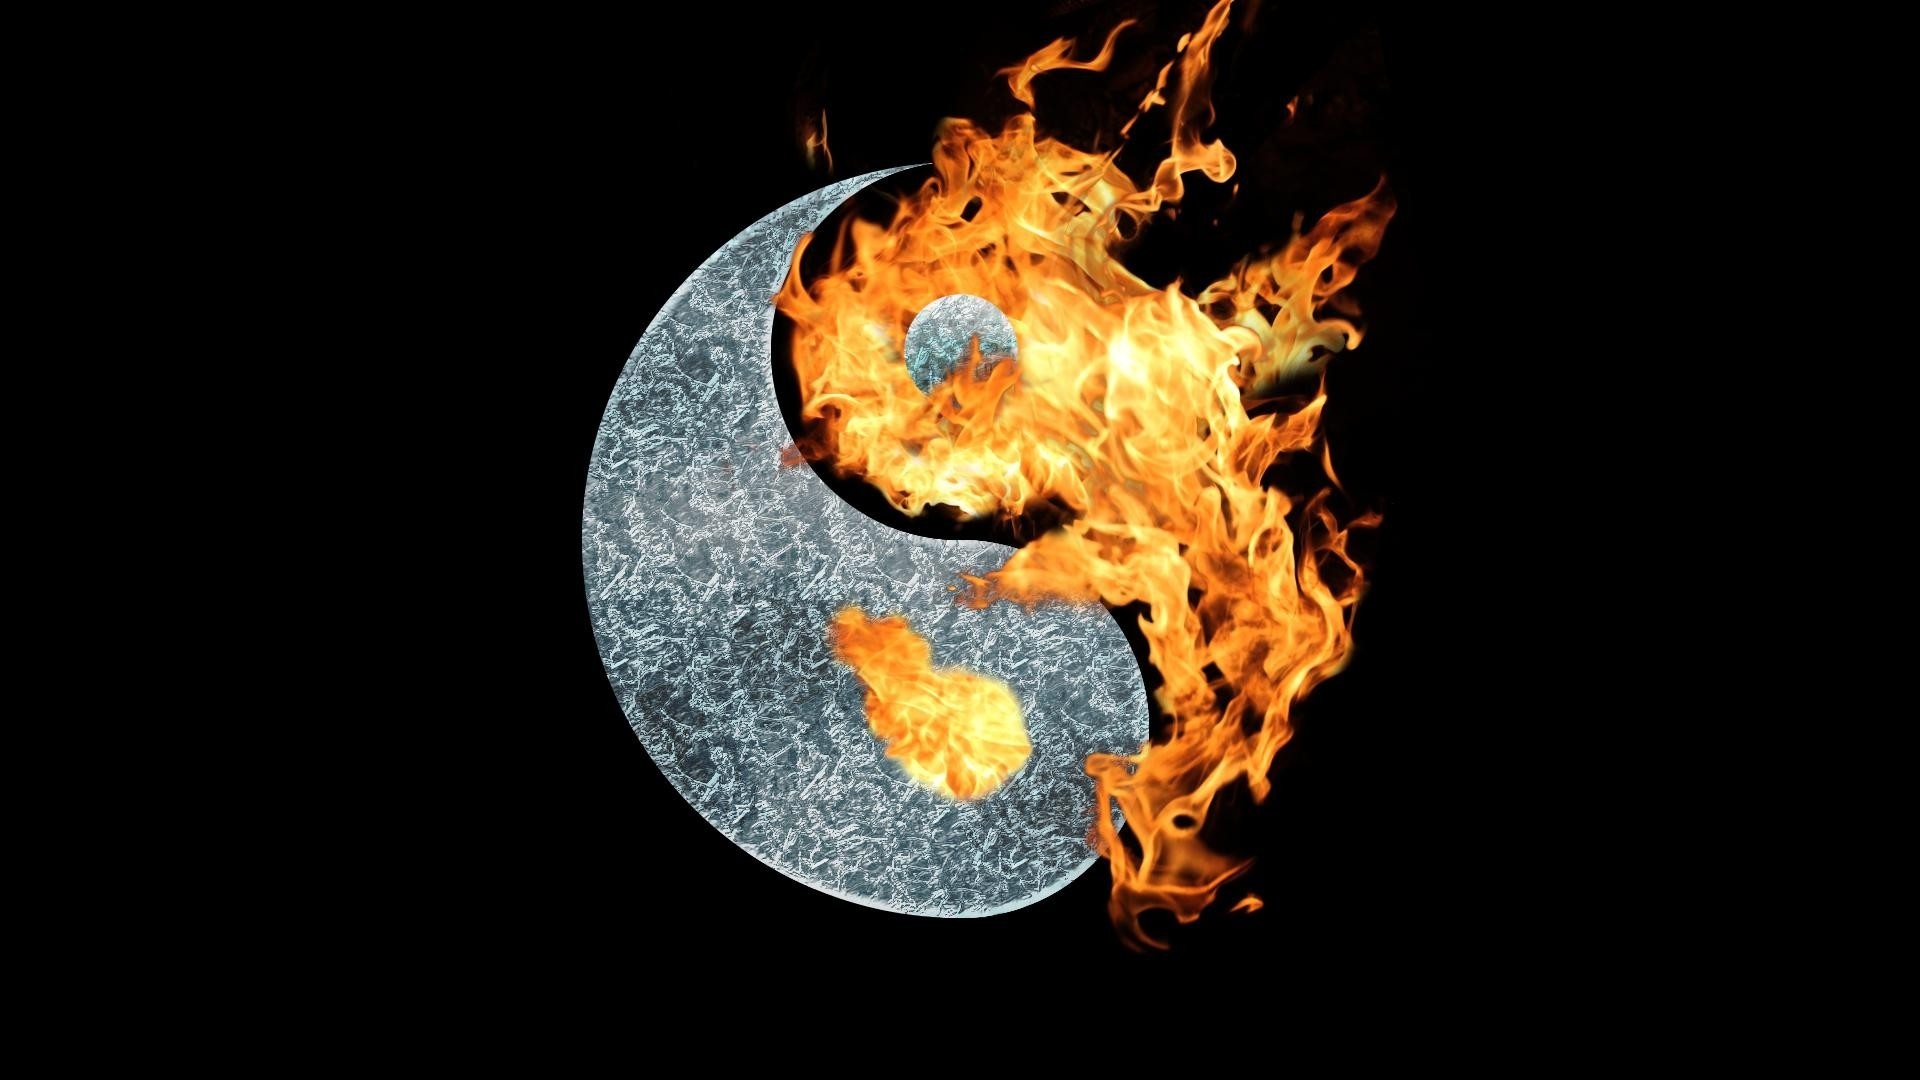 Yin yang symbol fire wallpaper 1920x1080 70897 WallpaperUP